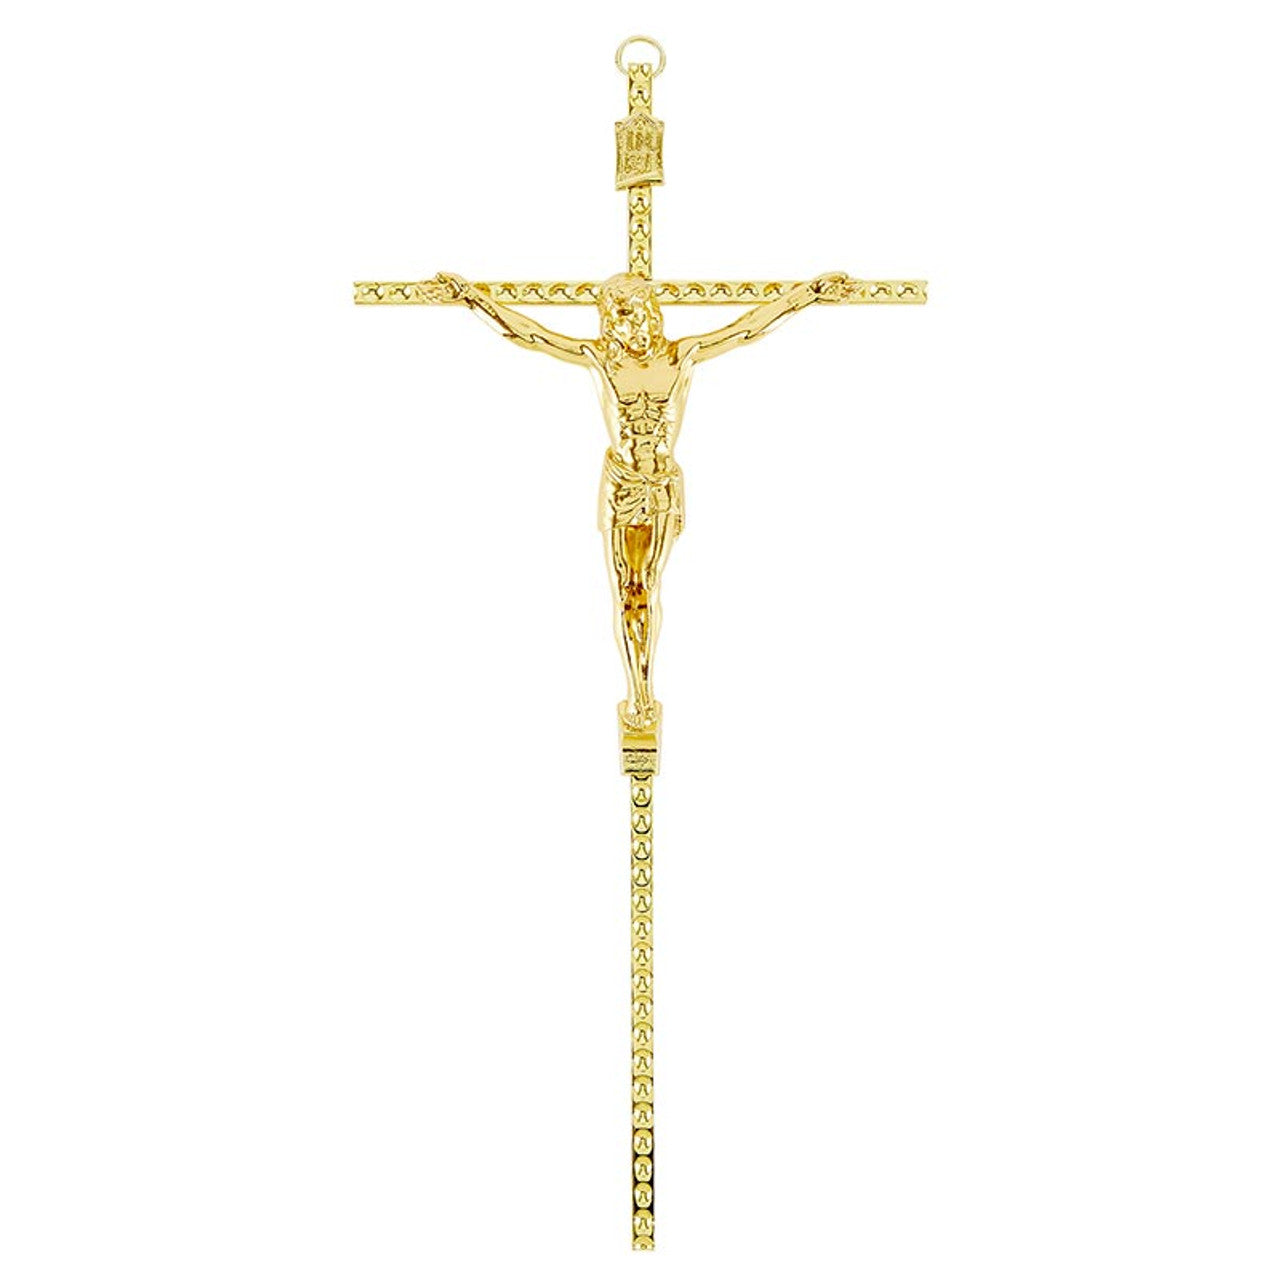 Hammered Crucifix Wall Hang - Gold